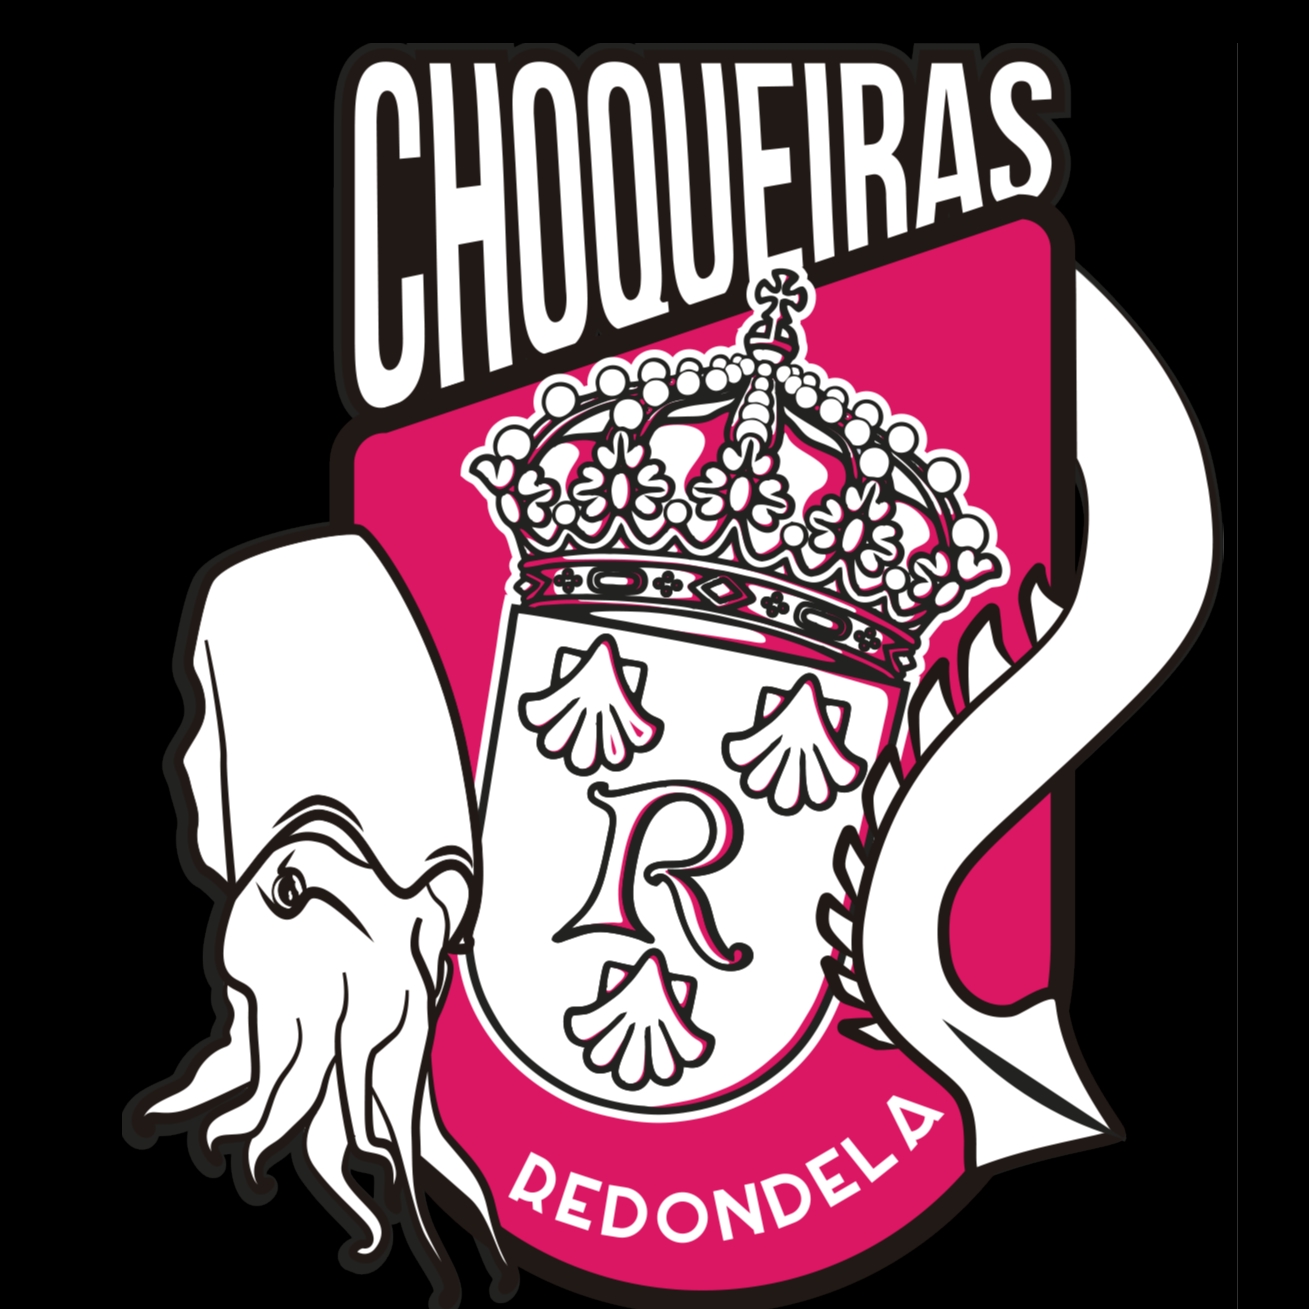 AS CHOQUEIRAS DE REDONDELA